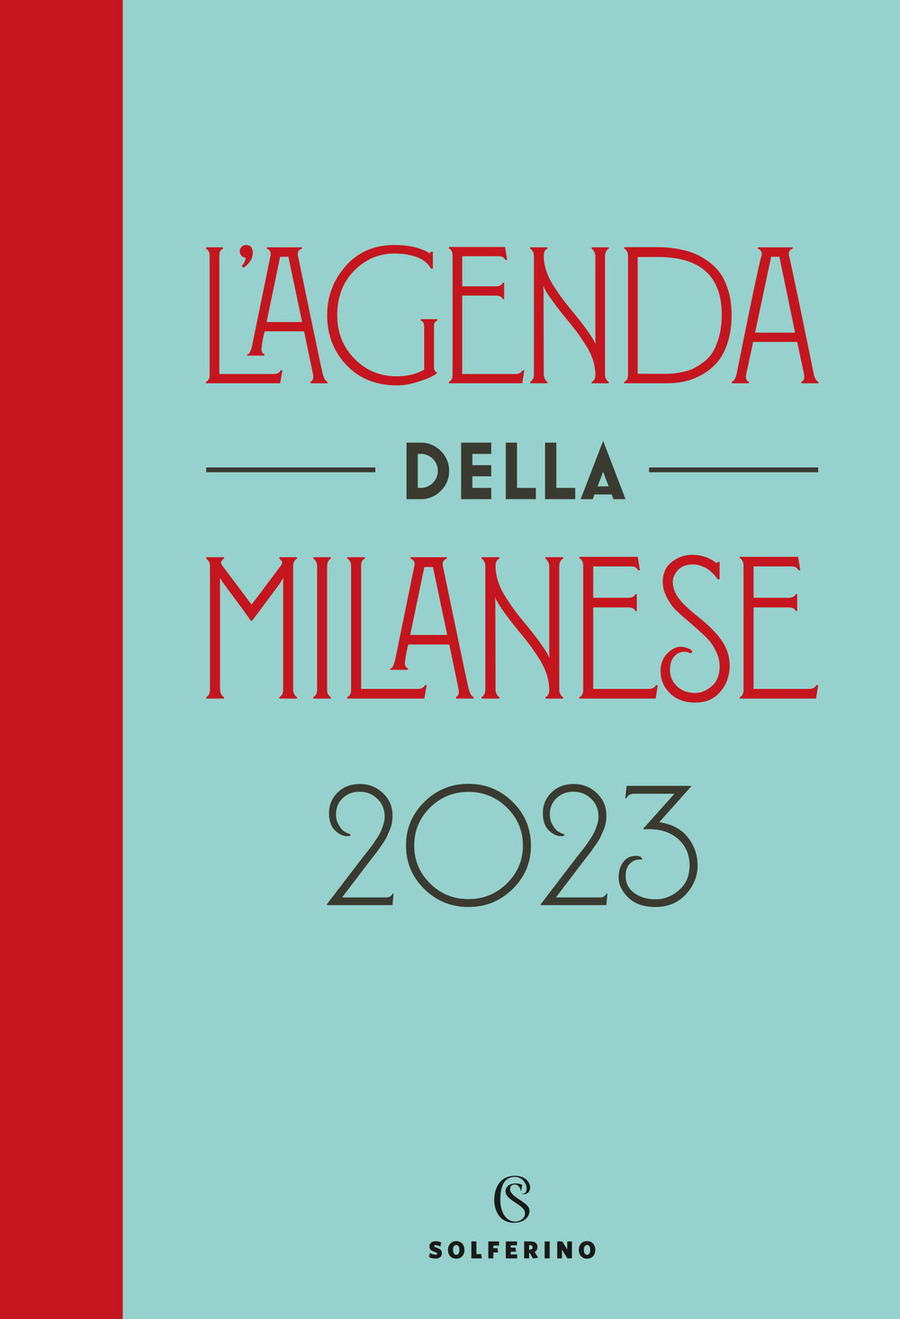 L' agenda della milanese 2023